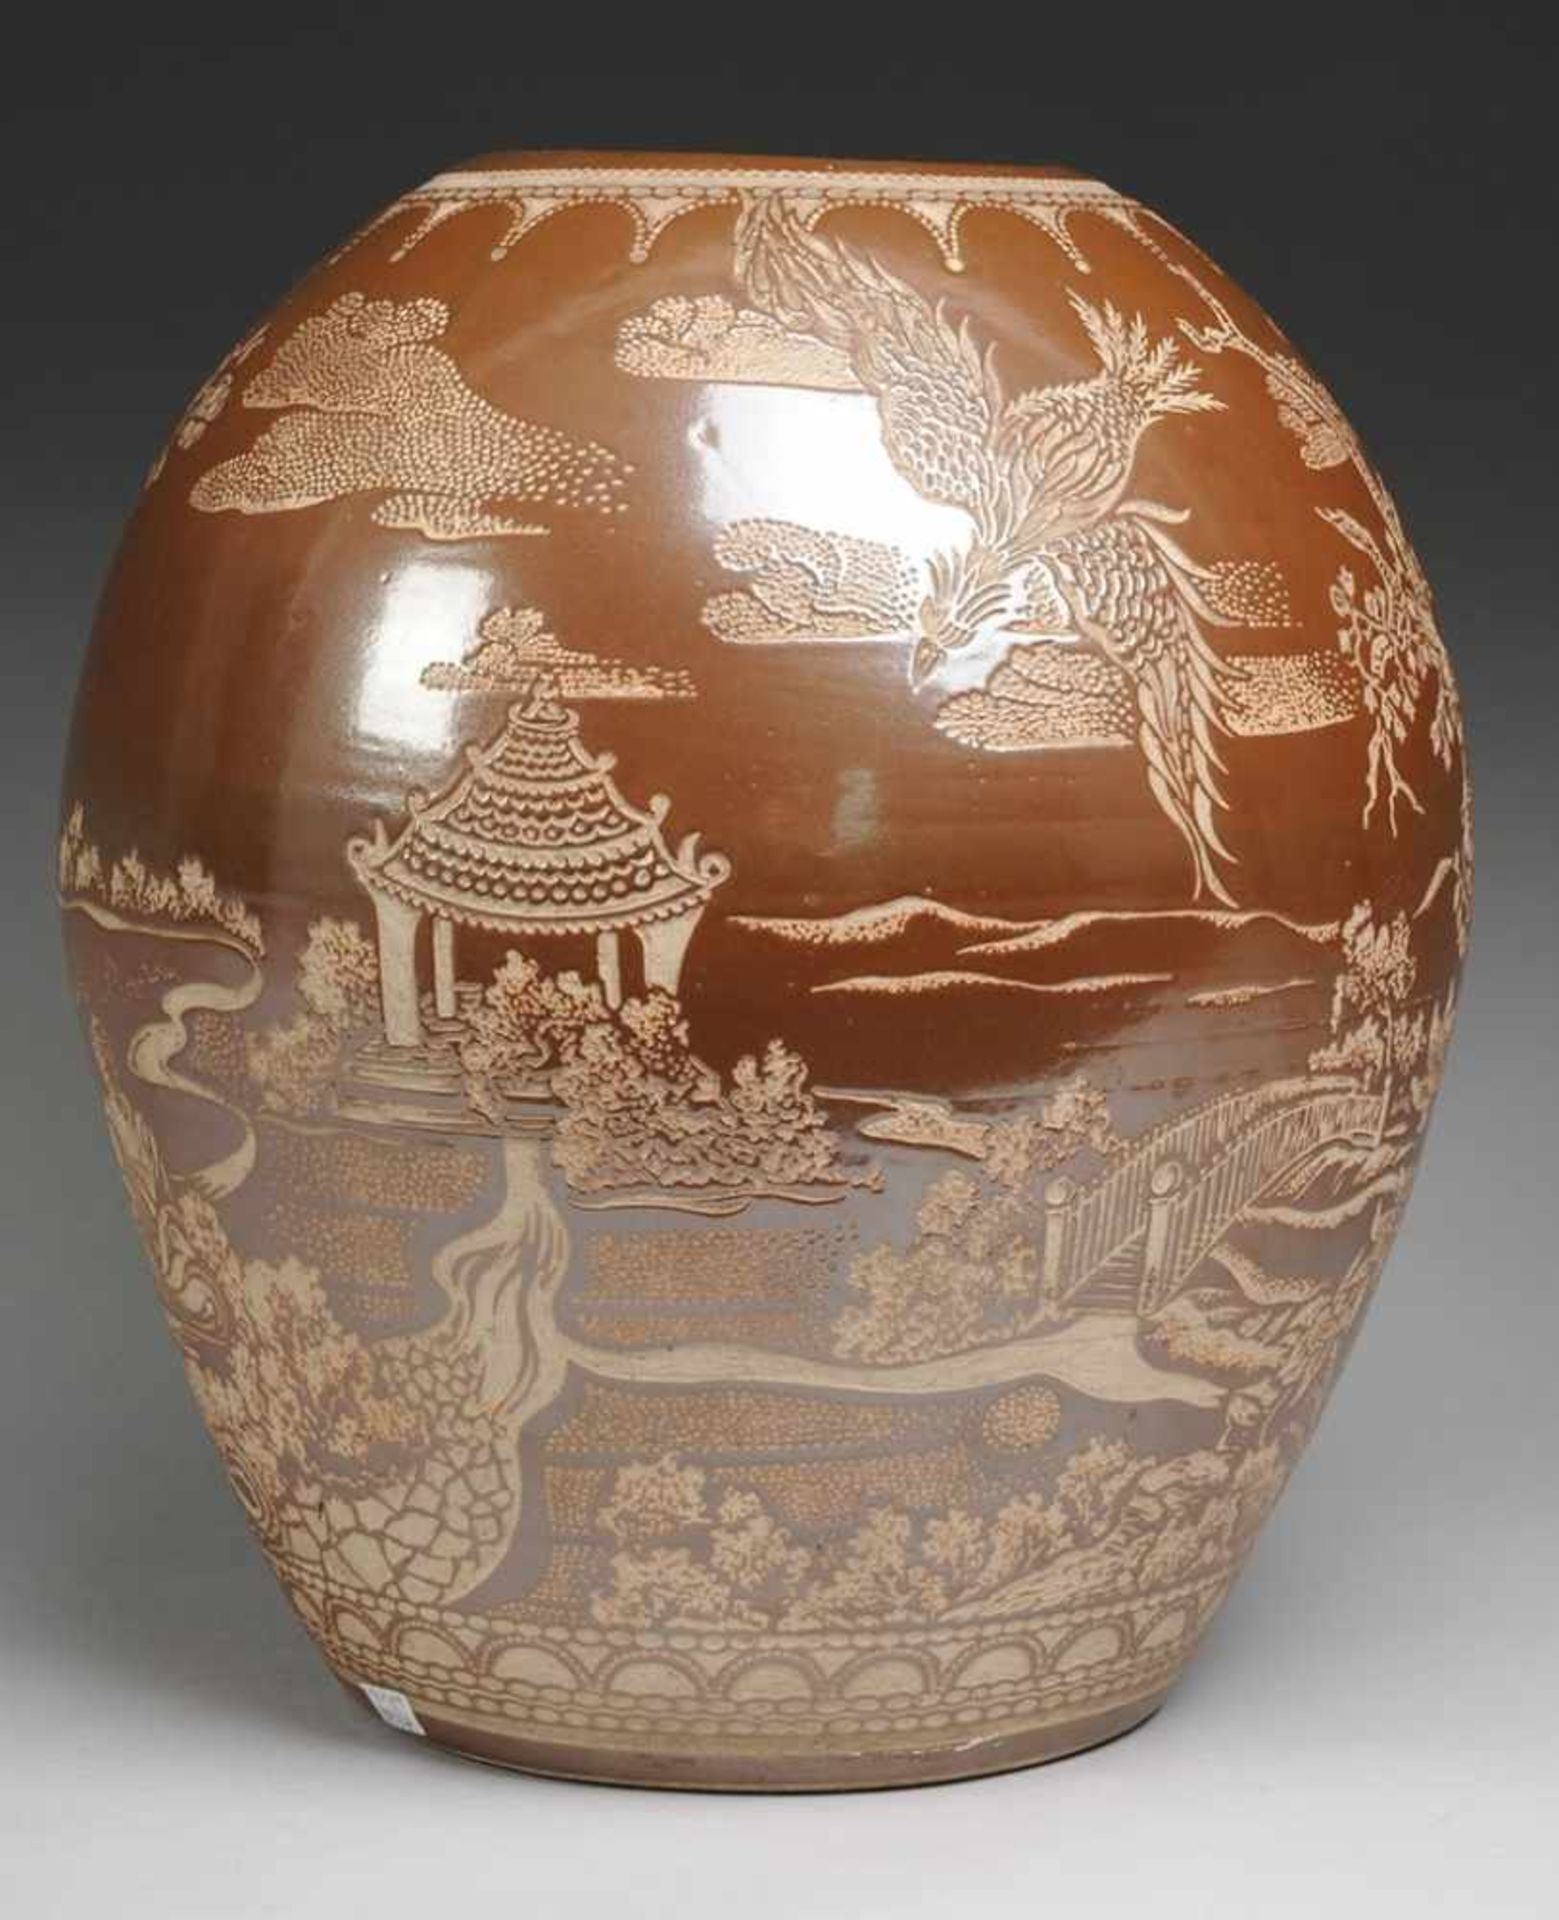 Große Vase mit asiatischem DekorSandfarbener Scherben, gedreht. Ovoider Korpus mit eingezogener